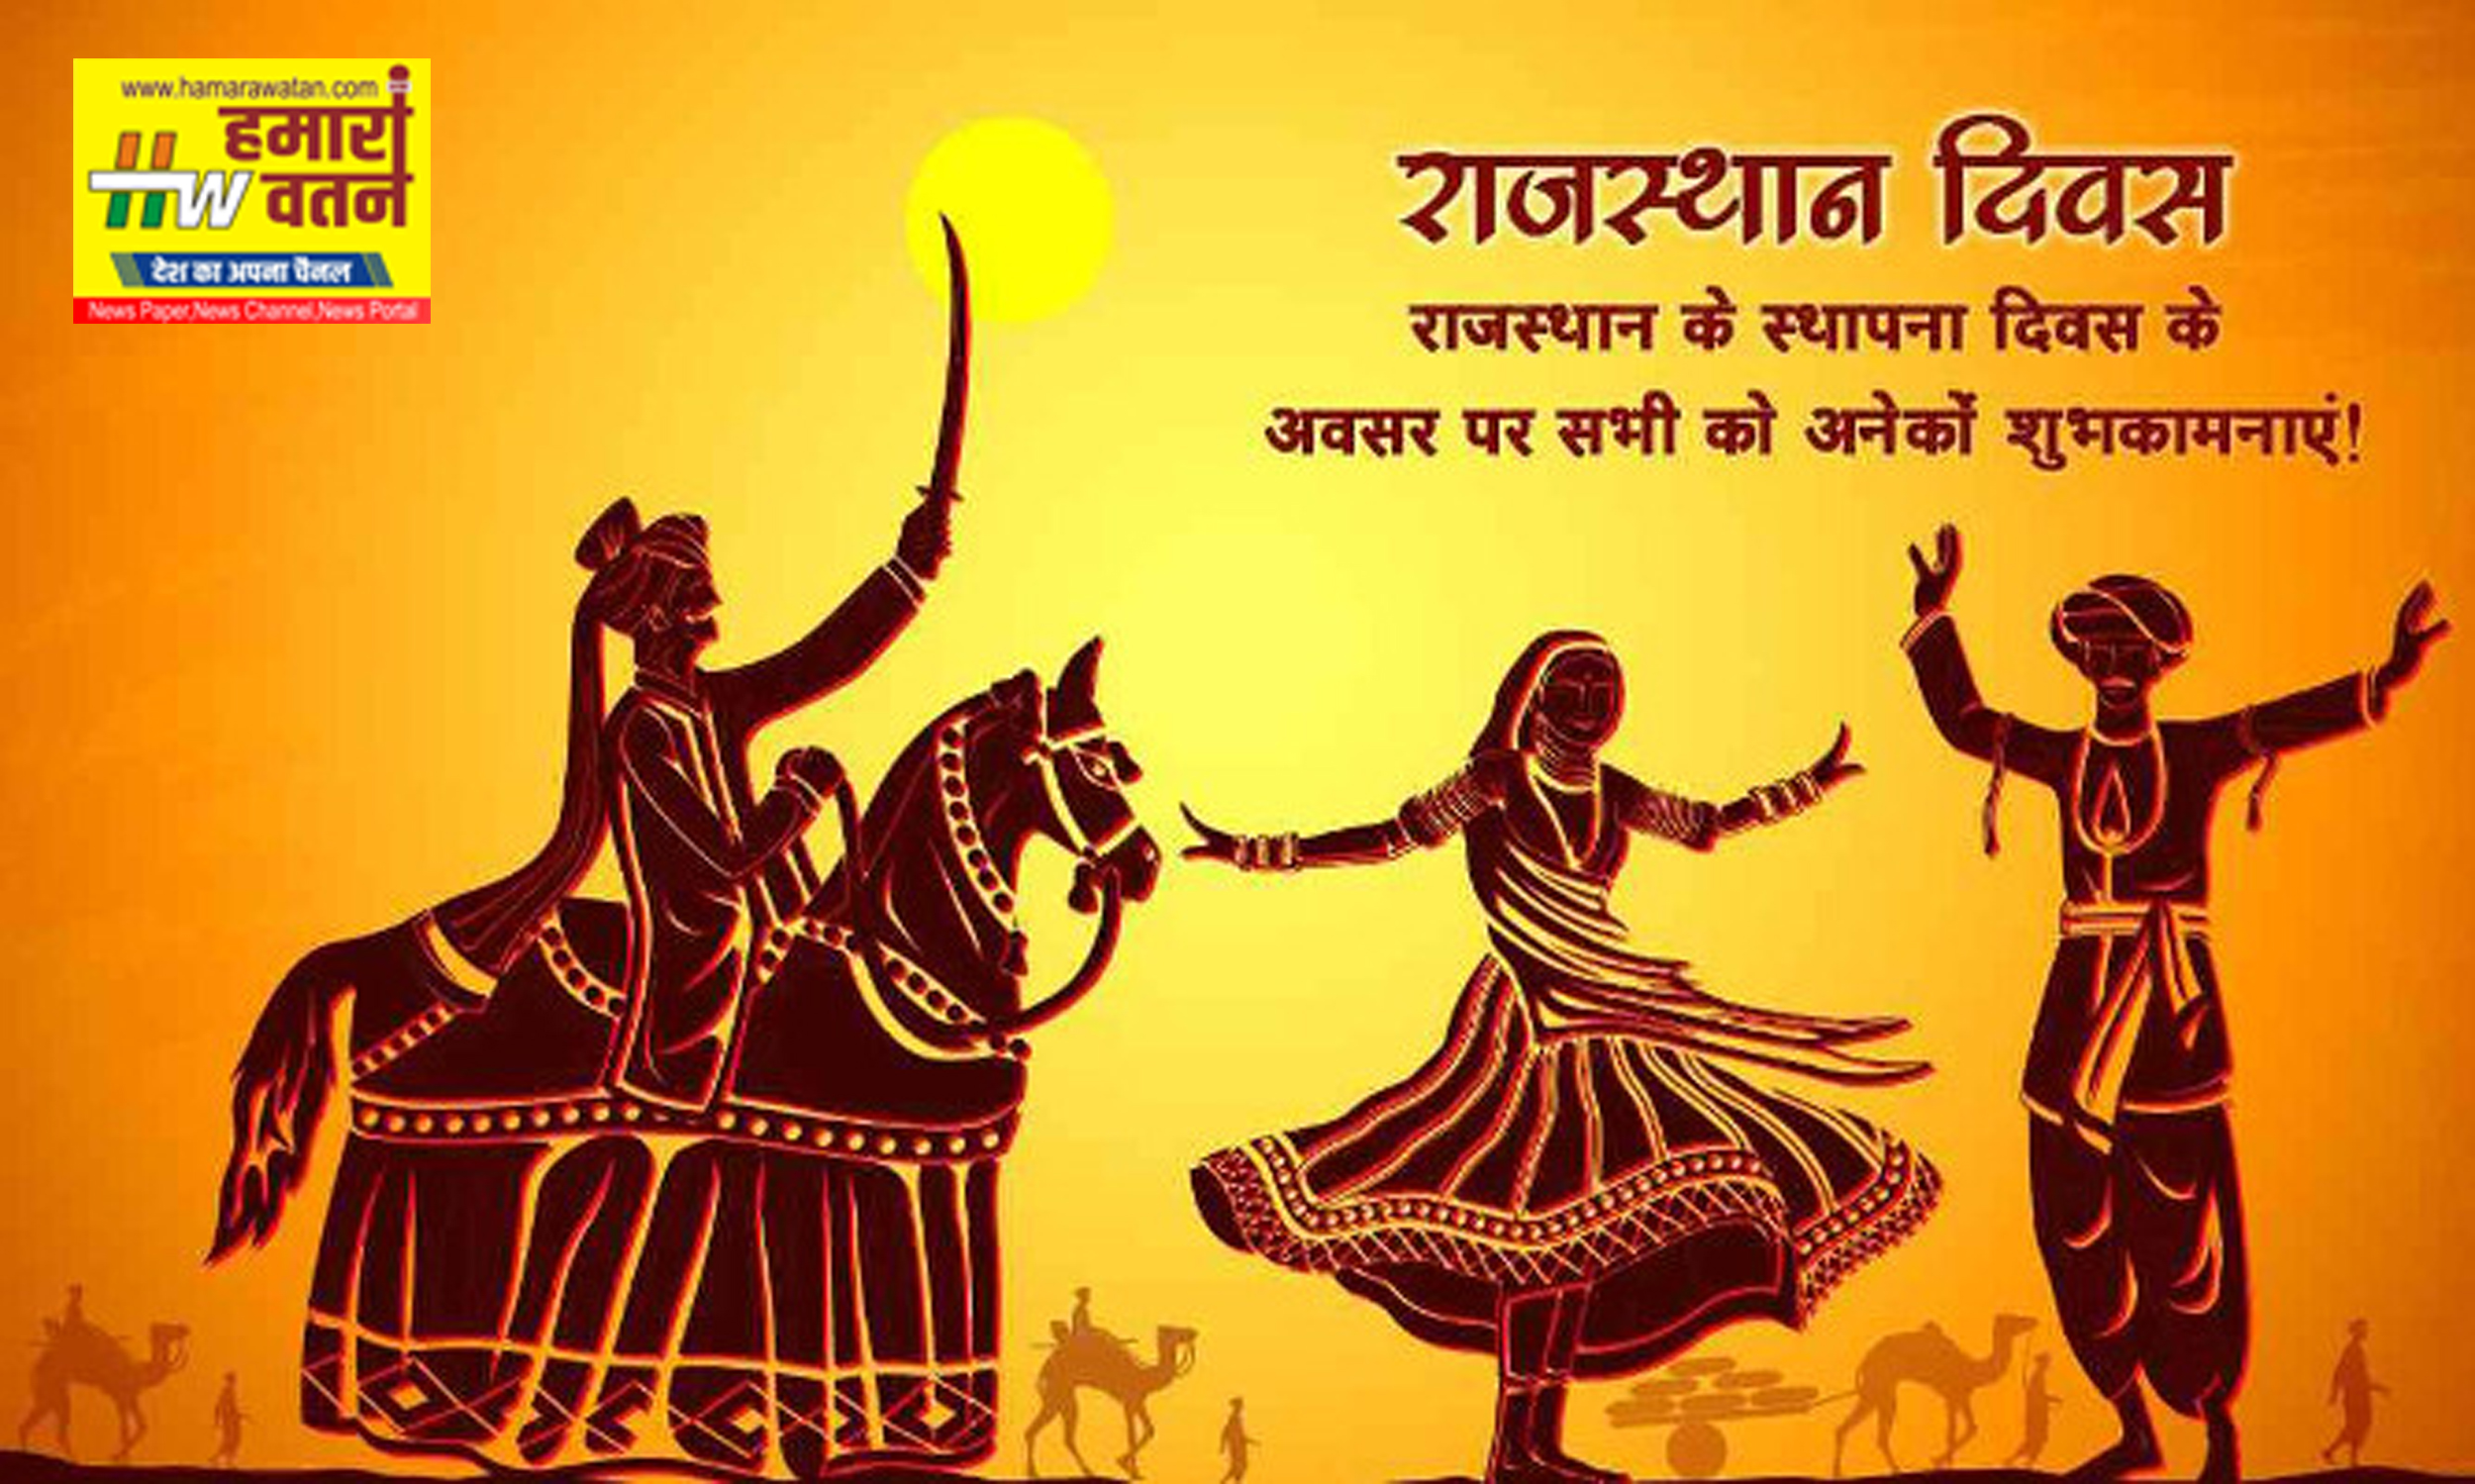 राजस्थान दिवस पर 30 मार्च को दिखेगी राजस्थानी संस्कृति की अनूठी झलक